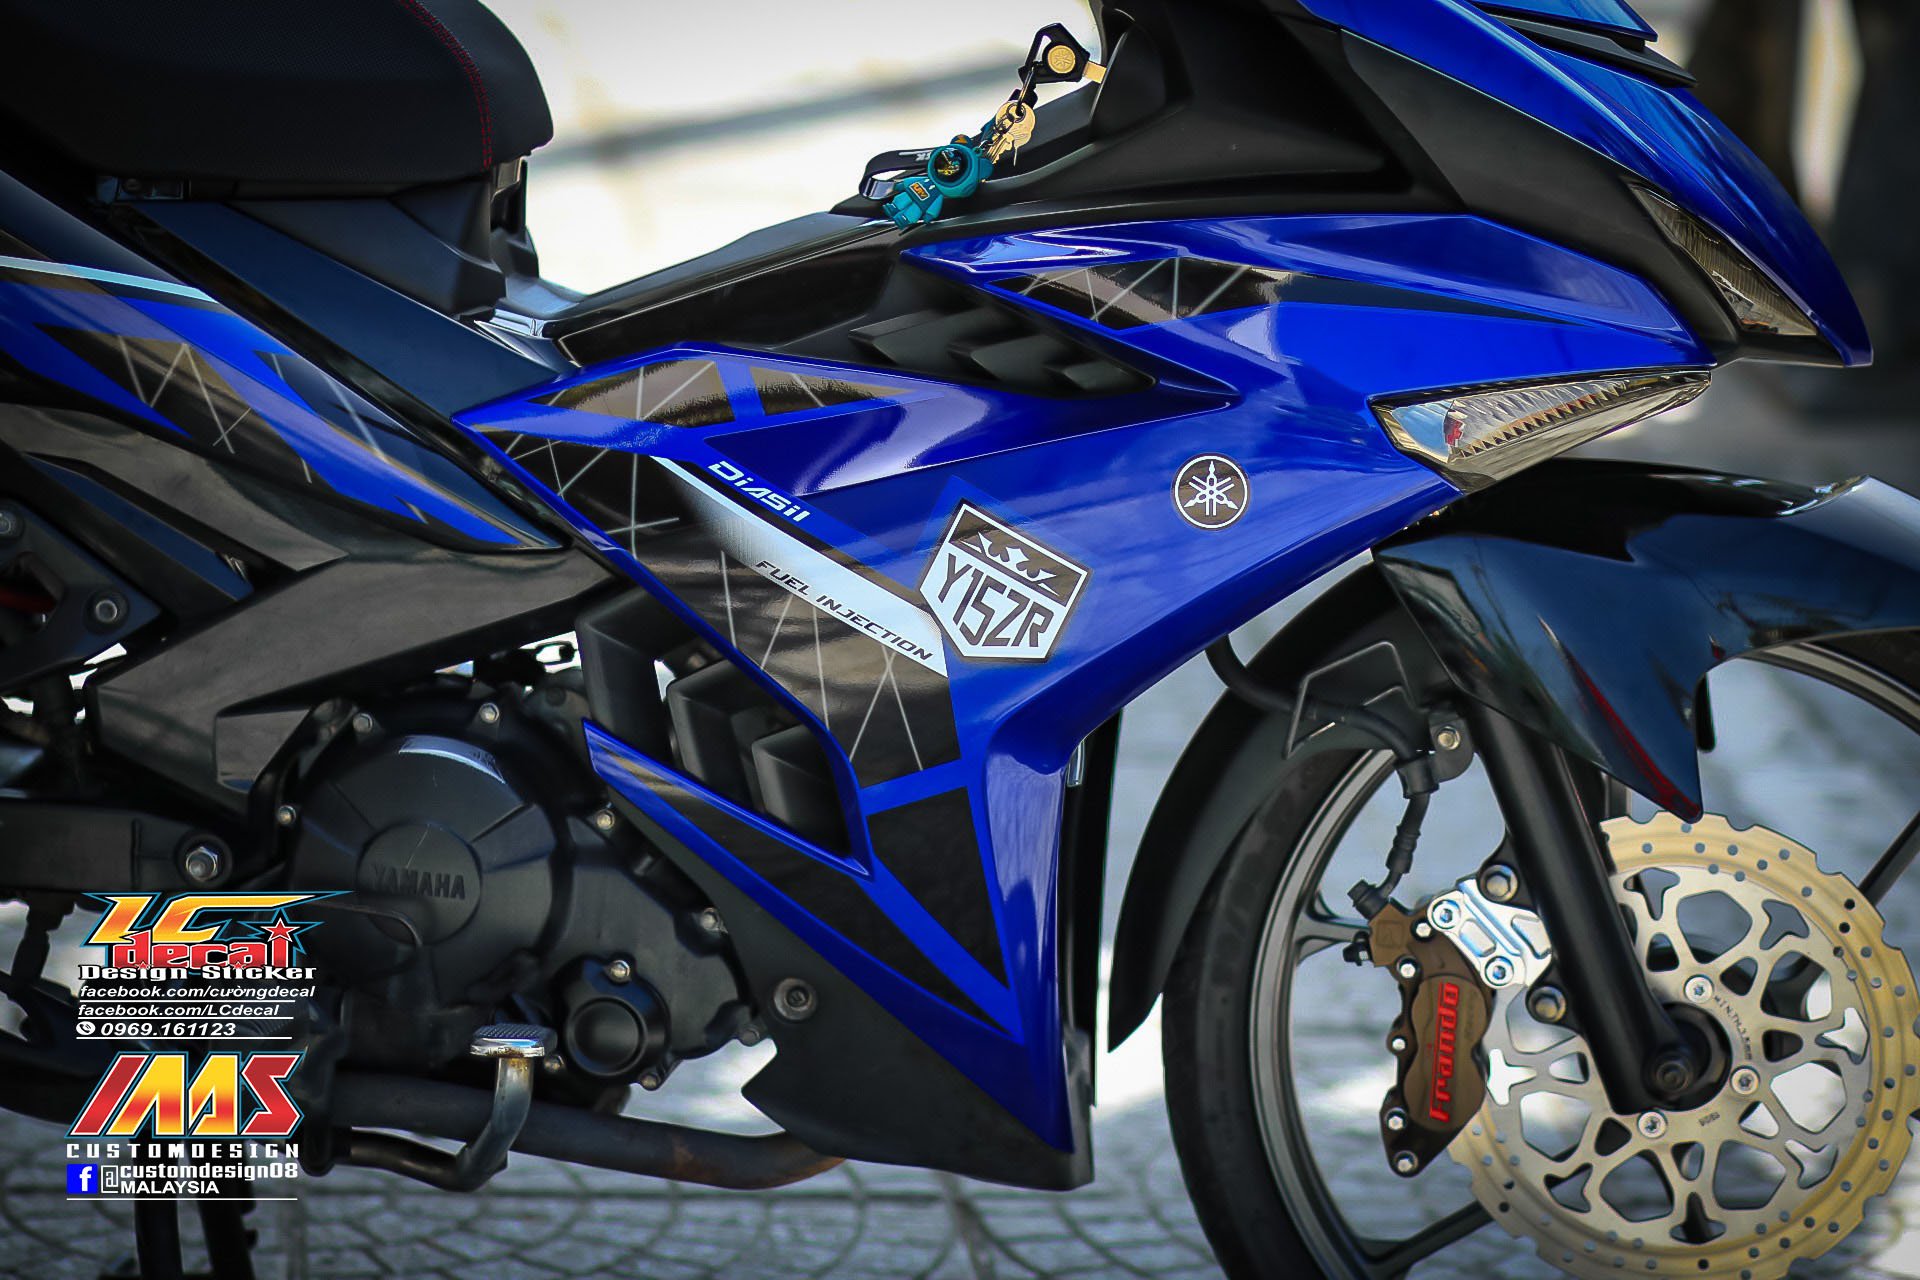 Yamaha Exciter 150 tuyệt đẹp với bộ tem màu xanh đi kèm phụ kiện đắt giá